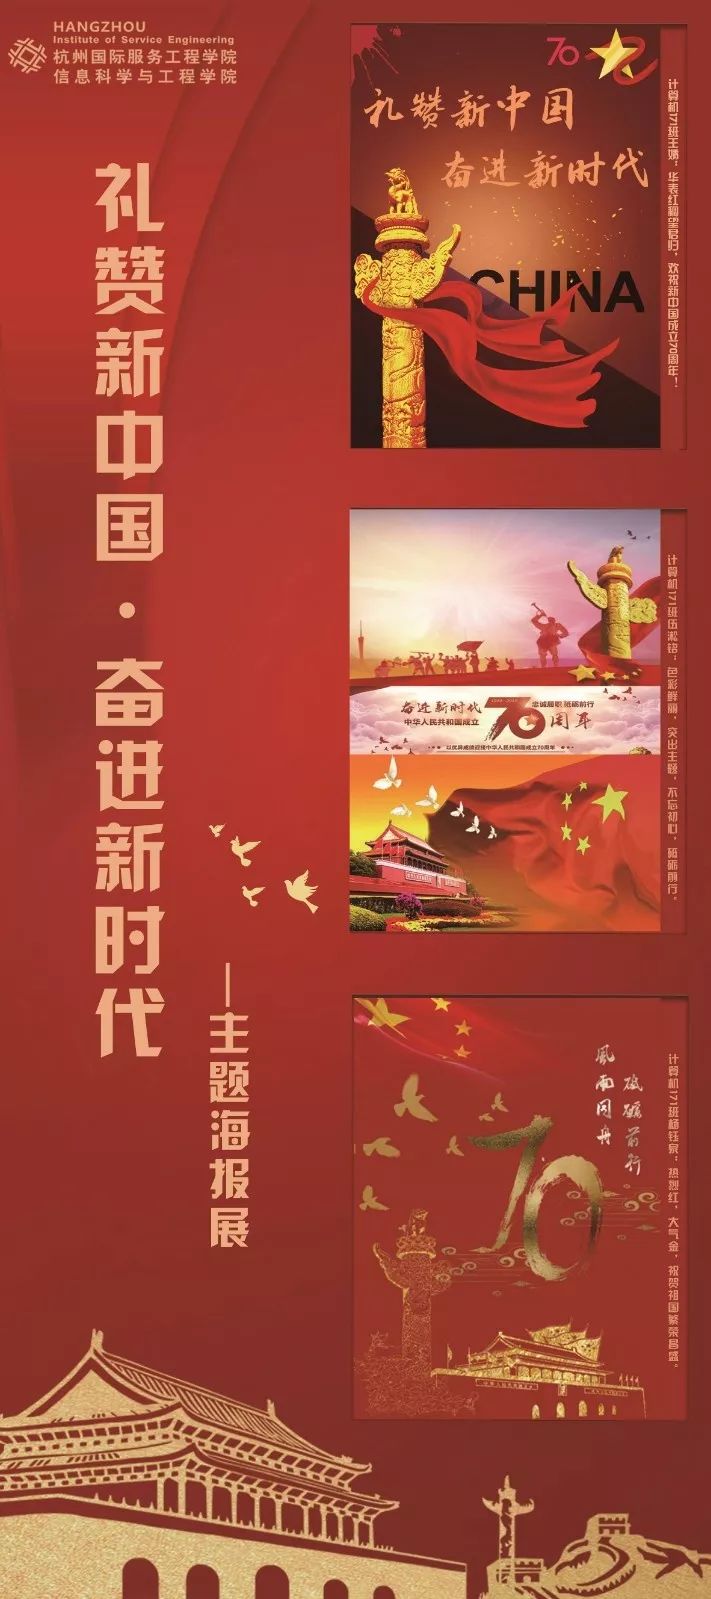 礼赞新中国奋进新时代海报设计大赛优秀作品选登